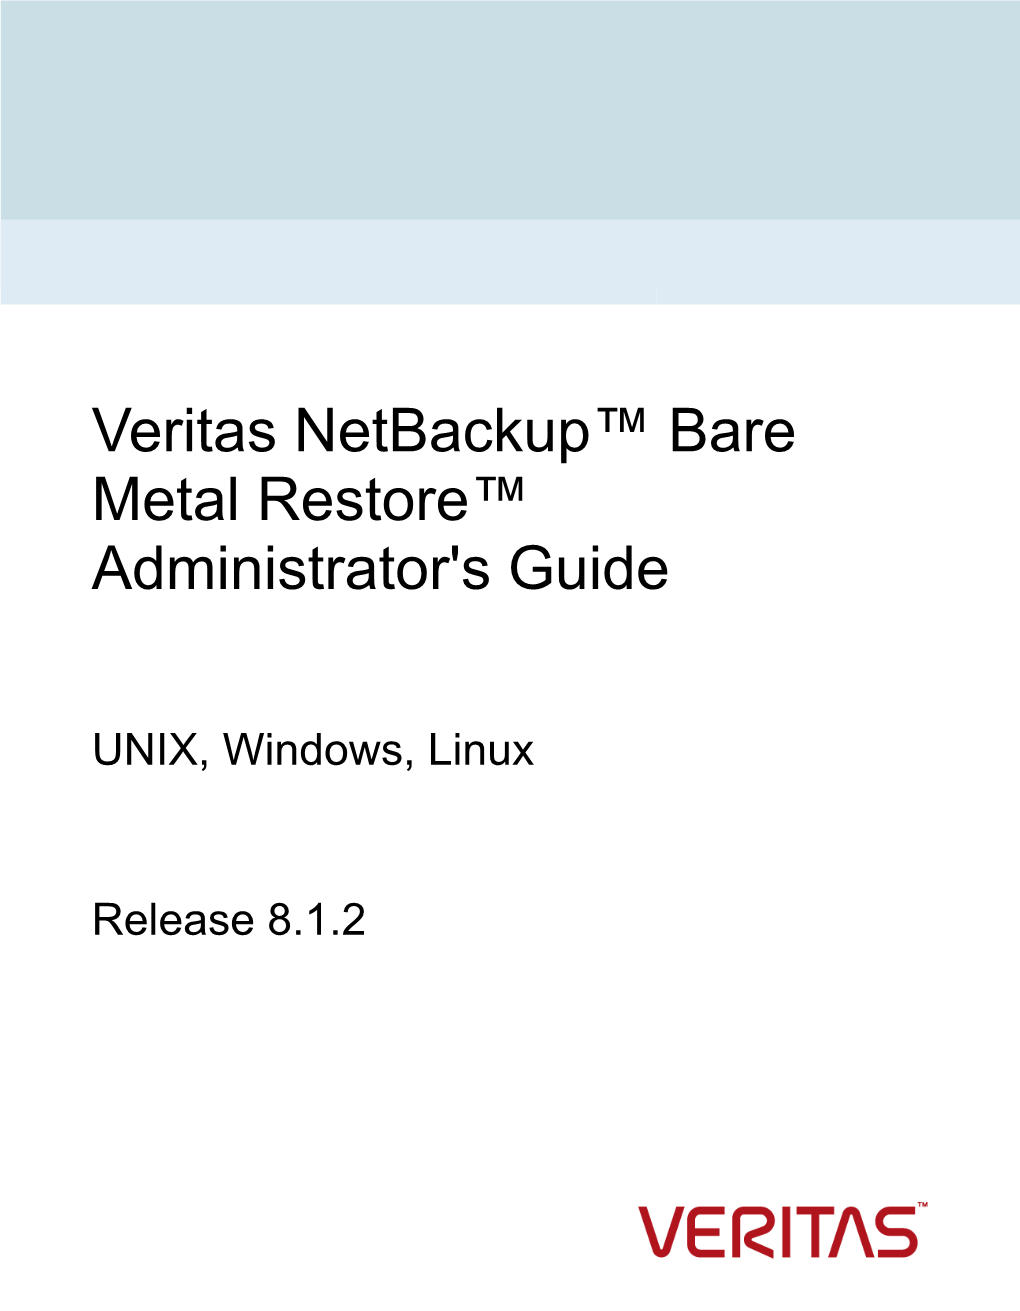 Veritas Netbackup™ Bare Metal Restore™ Administrator's Guide